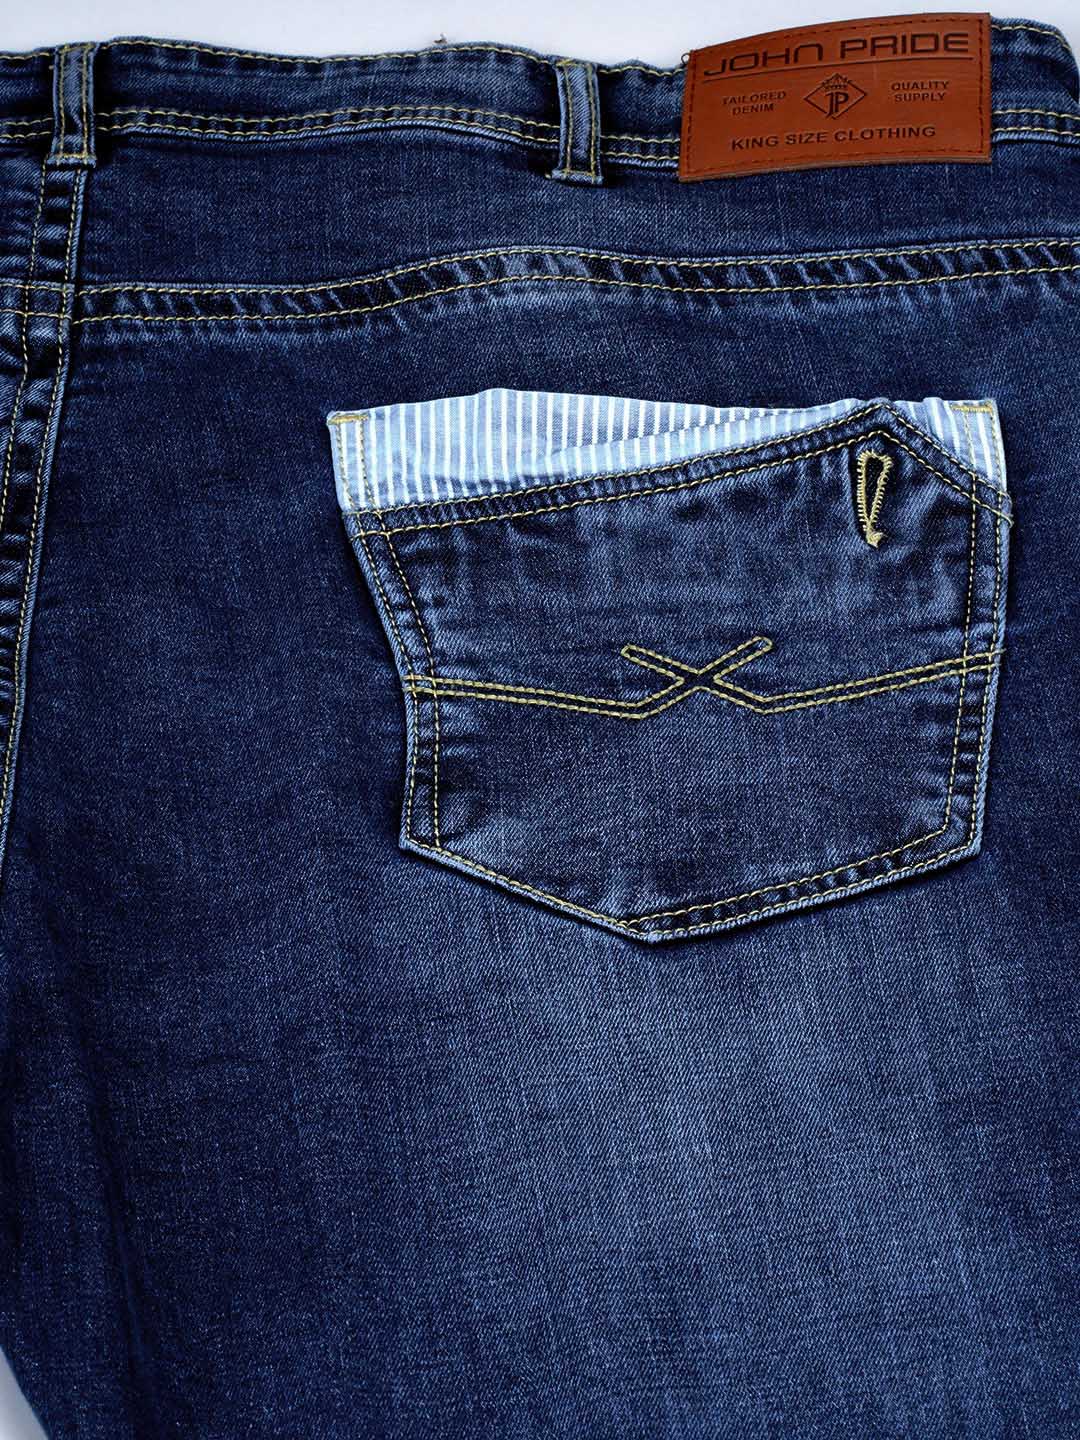 bottomwear/jeans/JPJ12126/jpj12126-5.jpg